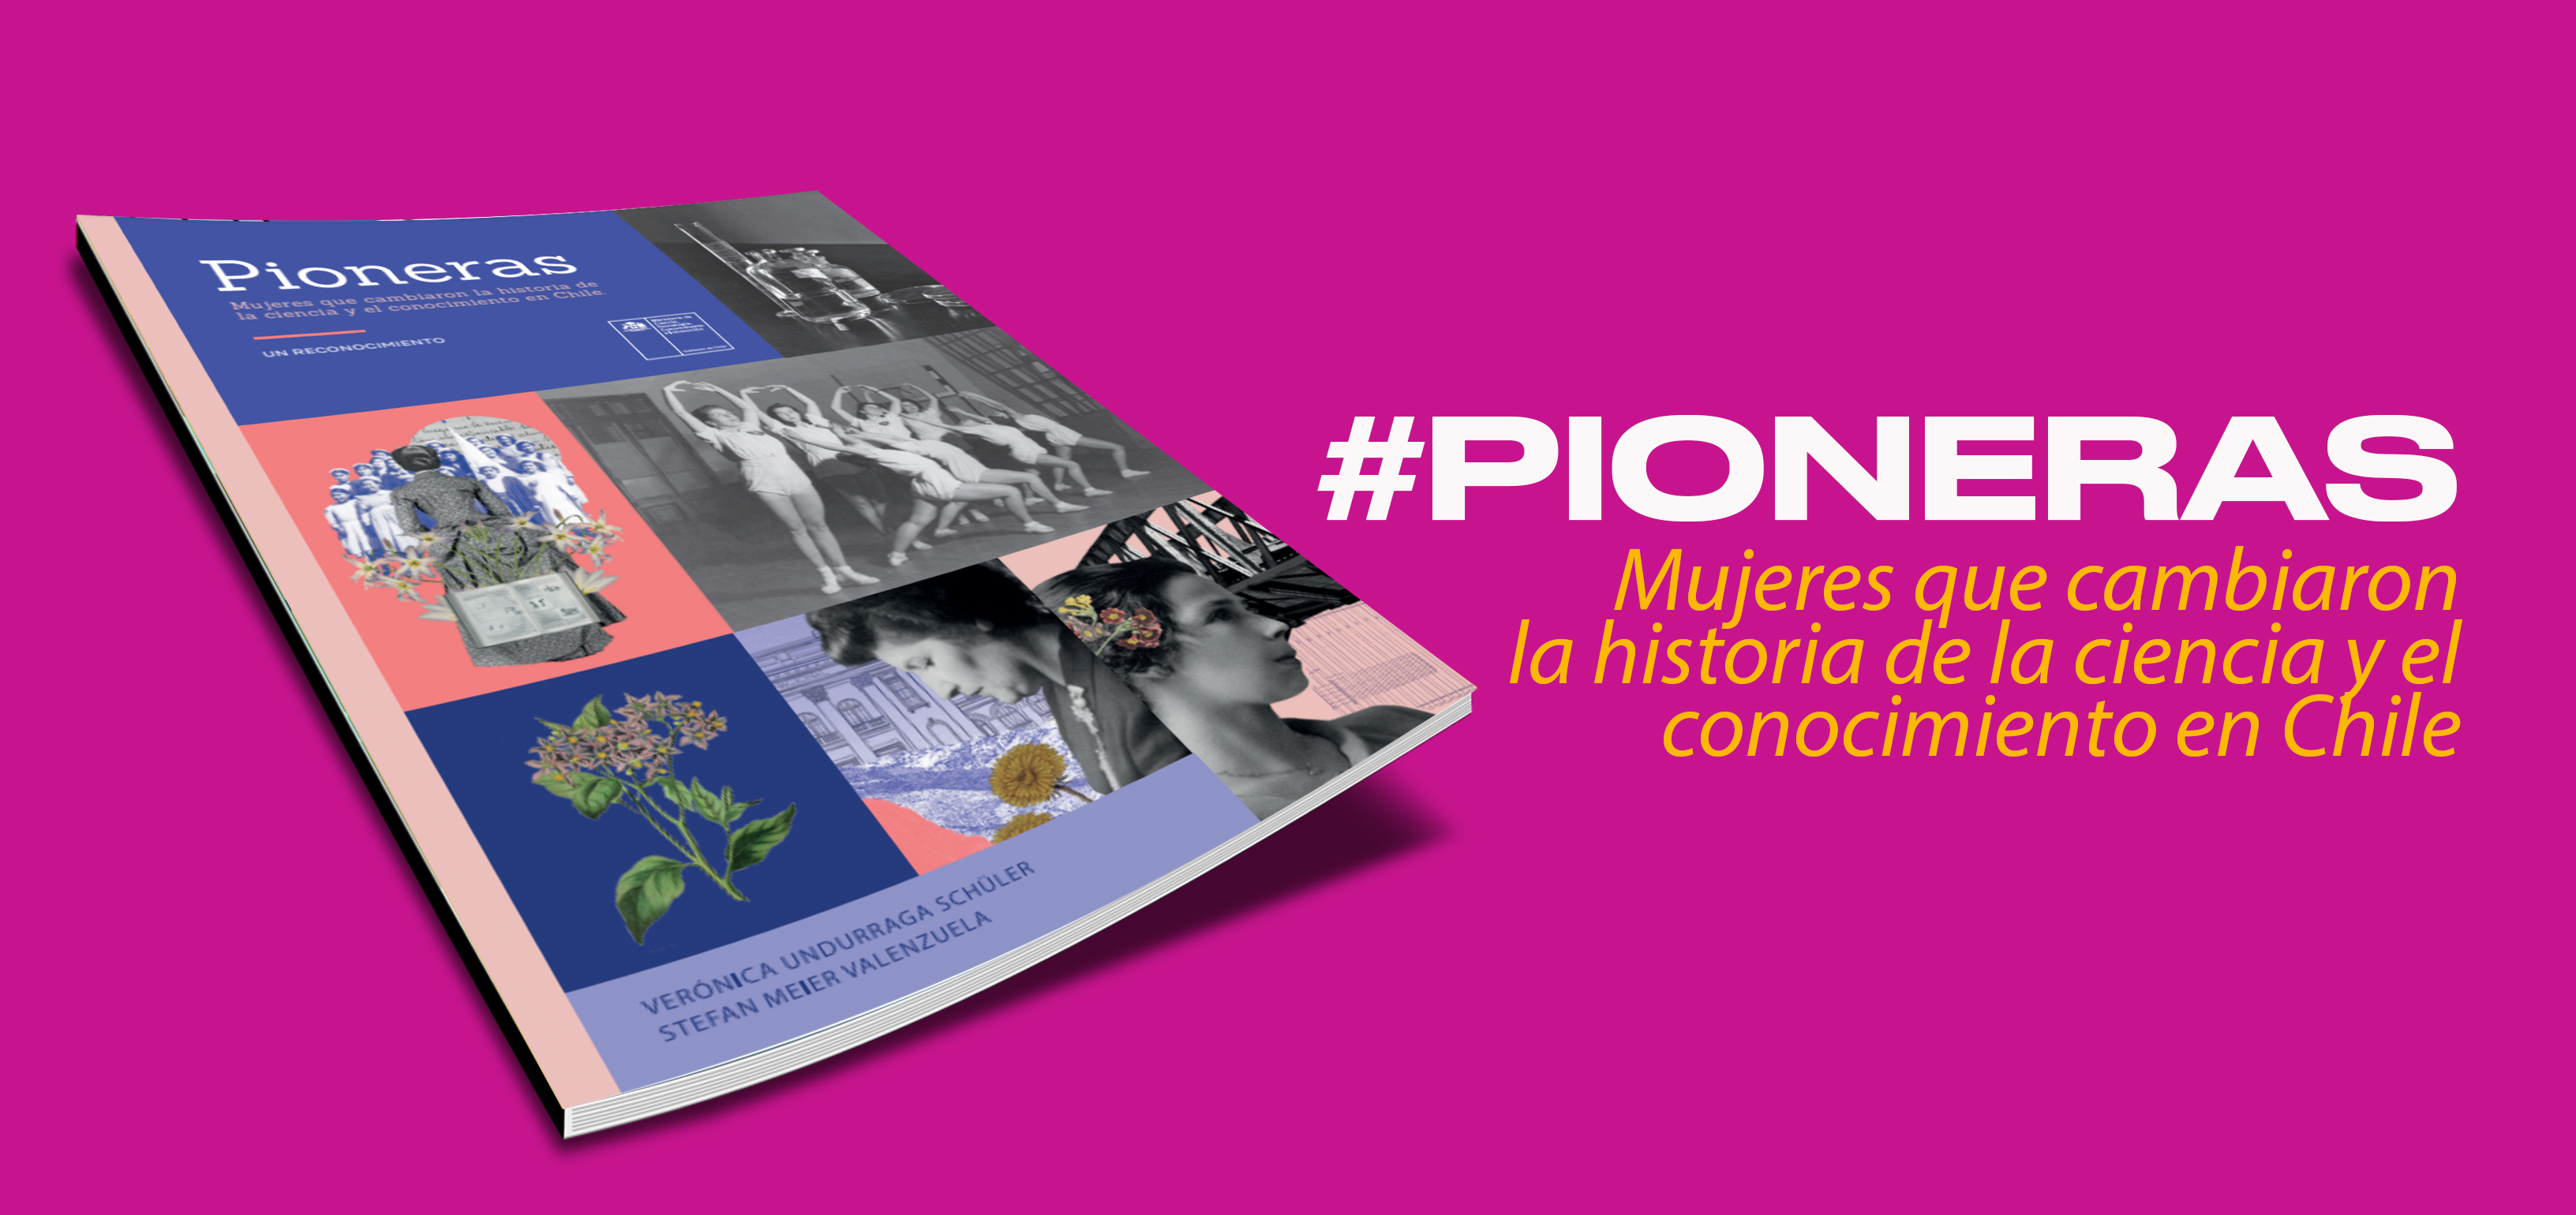 -. #PIONERAS

Mujeres que cambiaron
la historia de la ciencia y el
conocimiento en Chile